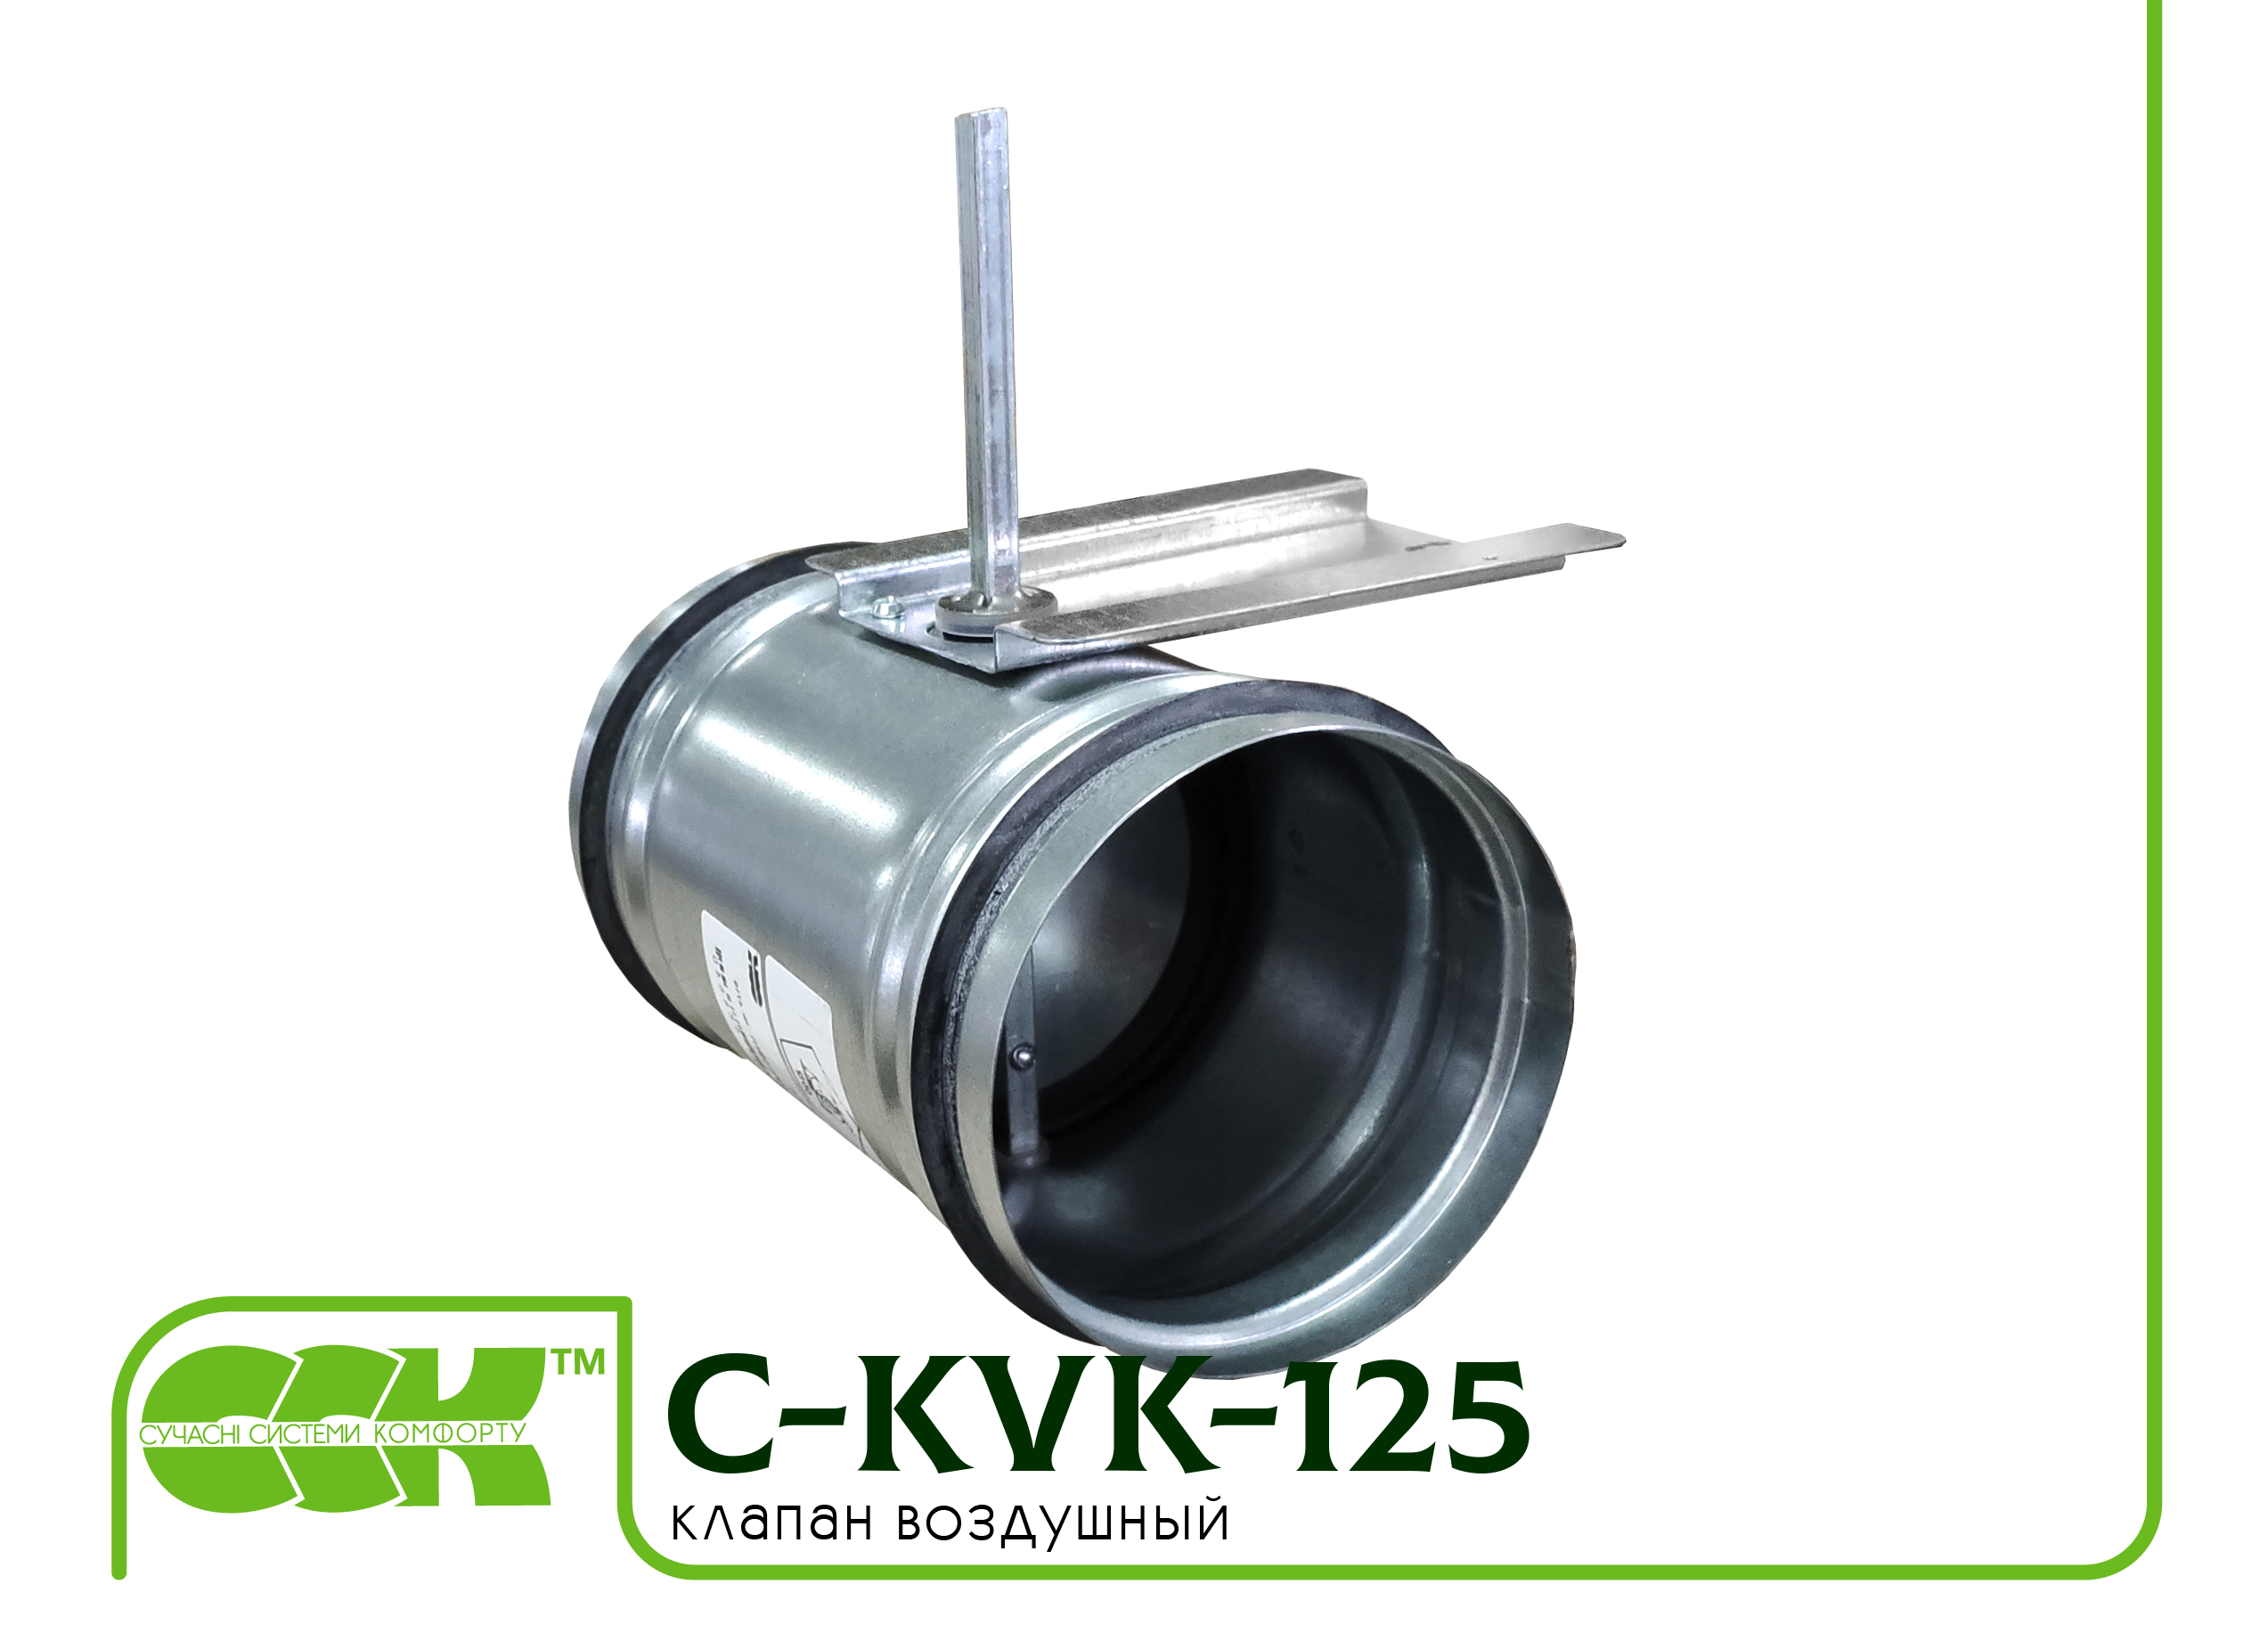 Воздушный клапан для вентиляции универсальный C-KVK-125-0